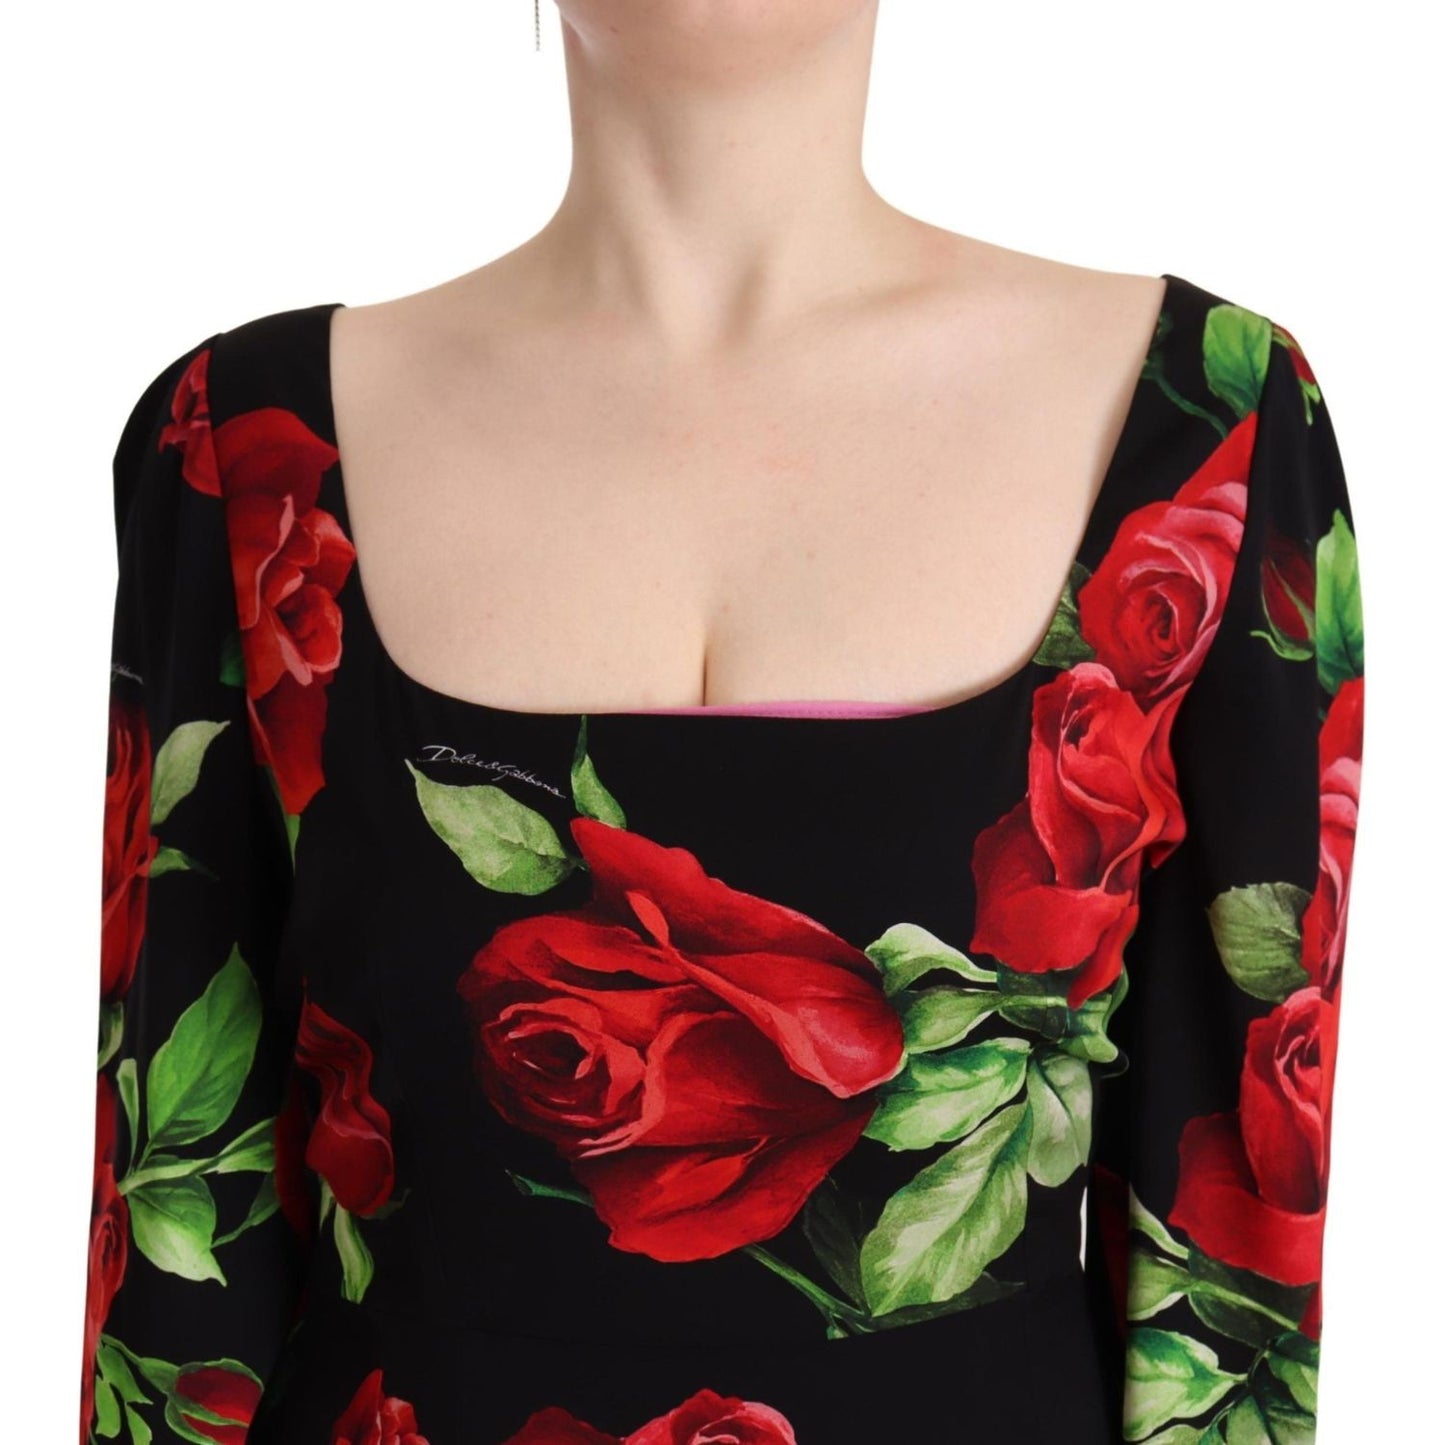 Dolce & Gabbana Elegant Floral Print Silk Sheath Dress black-red-roses-sheath-stretch-silk-dress IMG_7947-scaled-29291eaf-af4.jpg